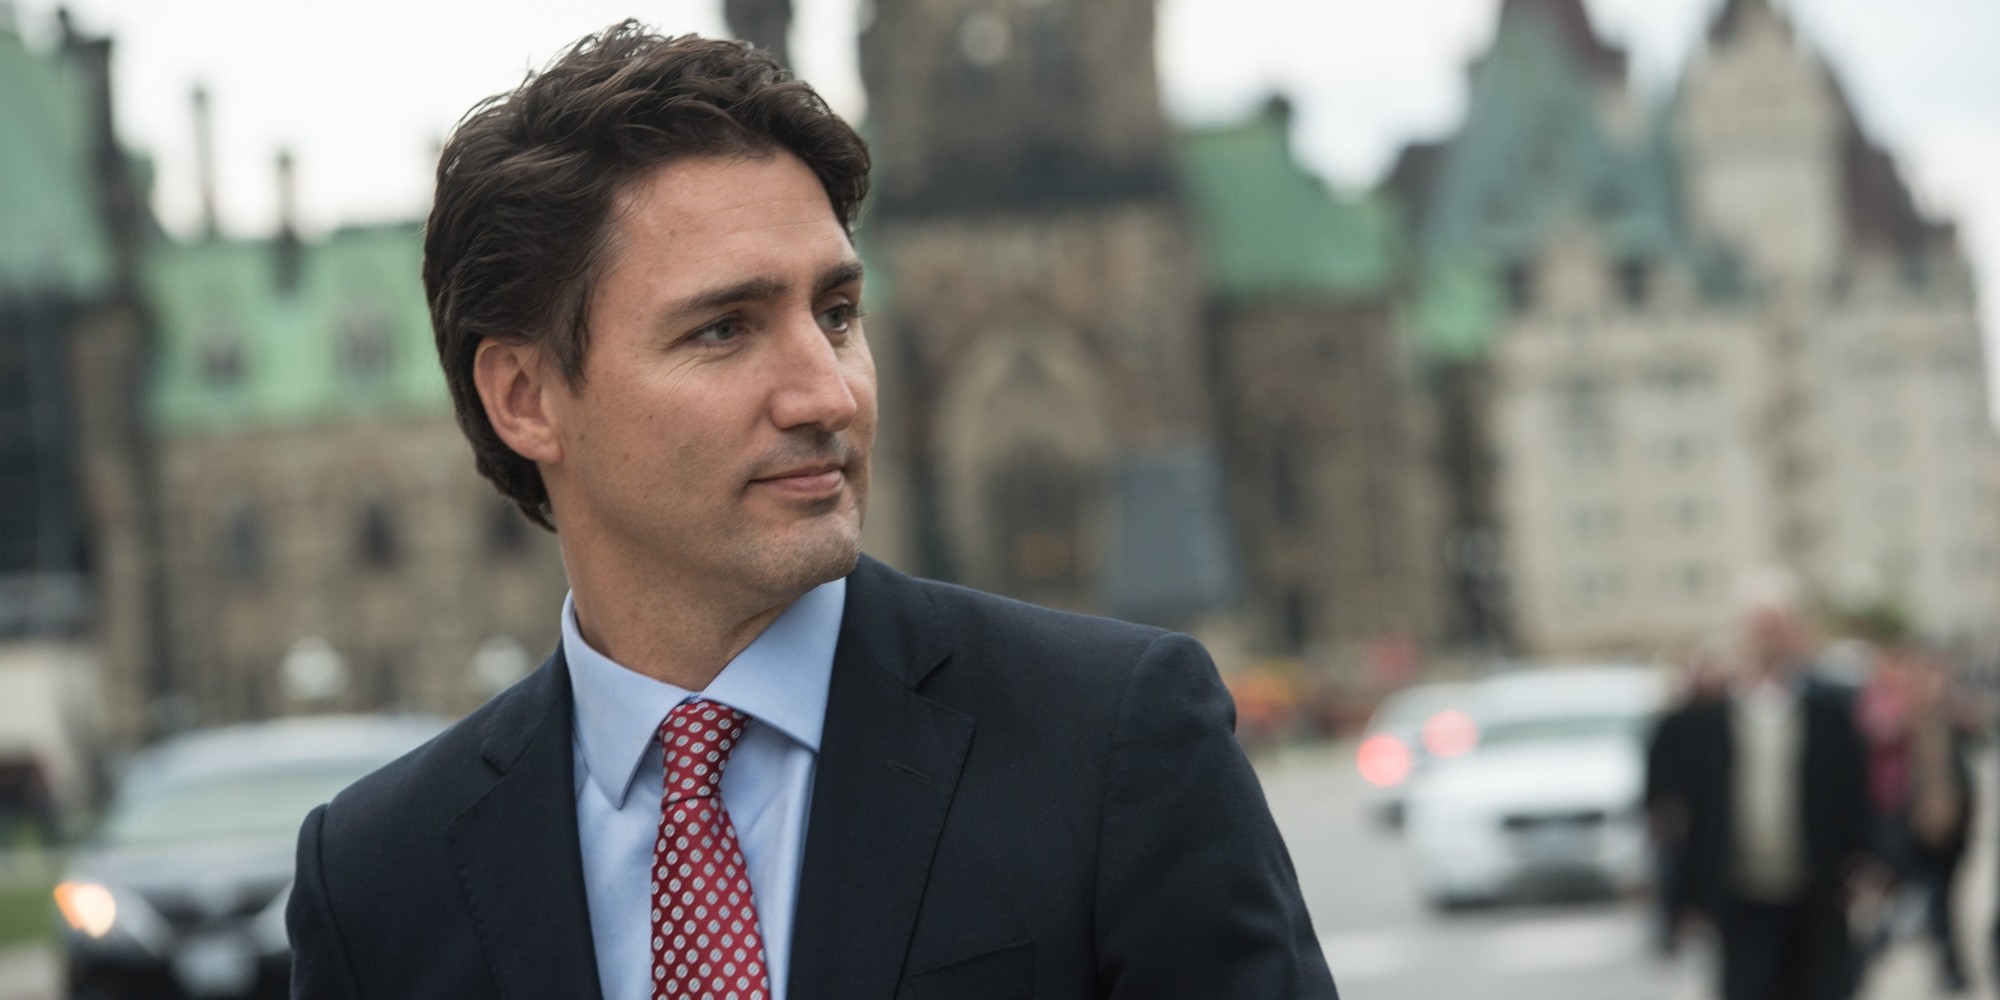 Justin Trudeau : Les fesses du Premier ministre canadien affolent la toile